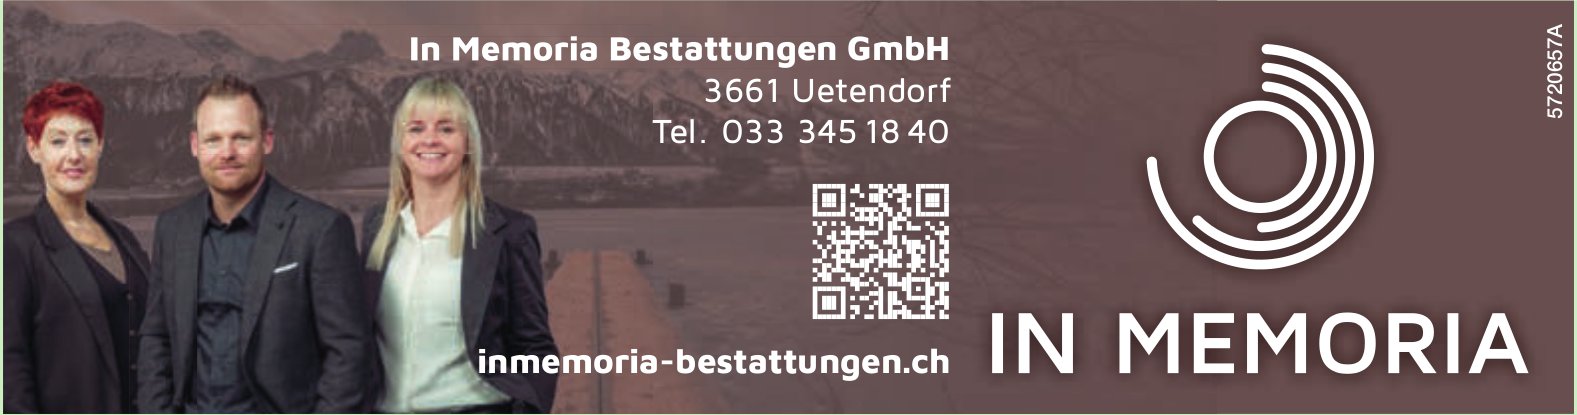 In Memoria Bestattungen GmbH, Uetendorf